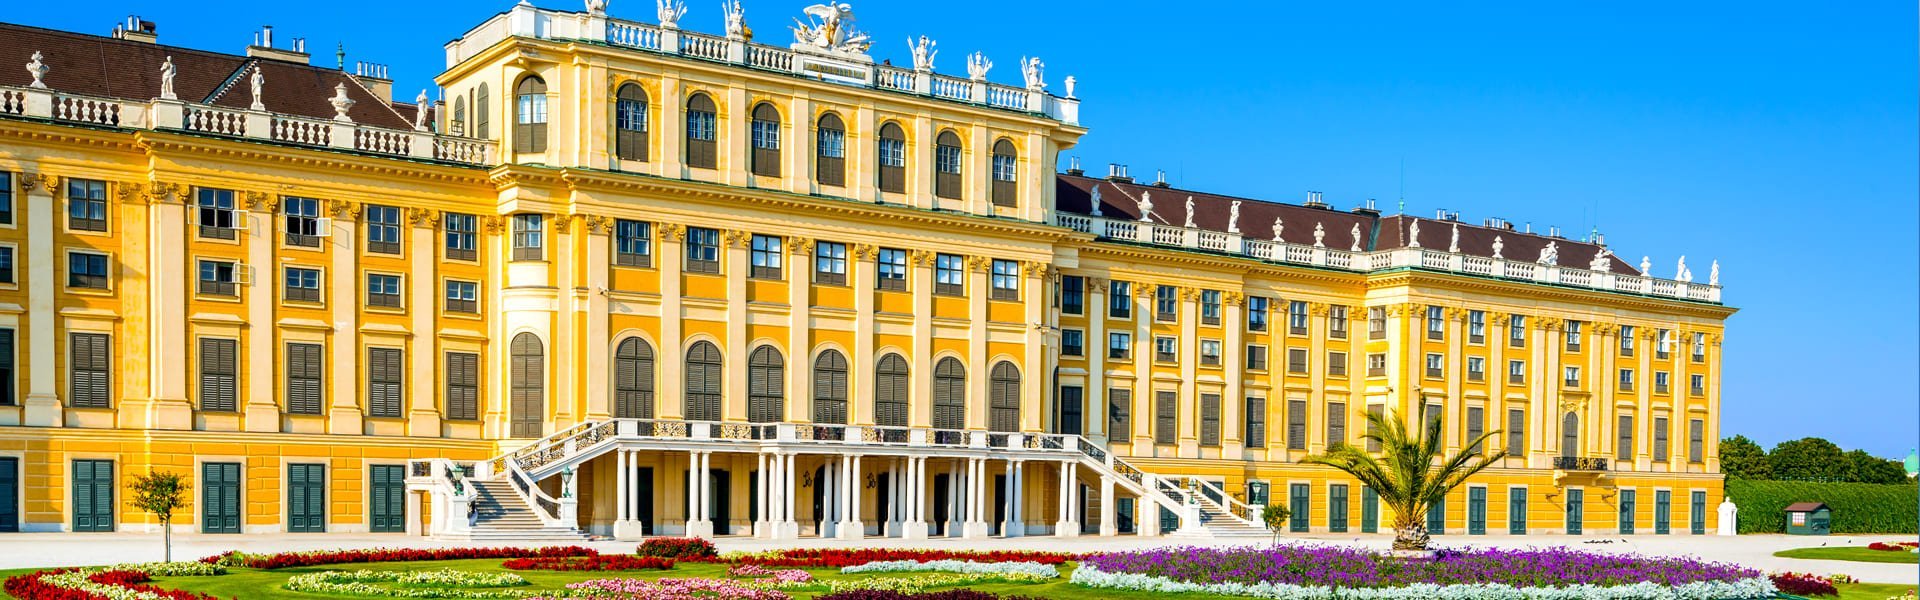 Schönbrunn in Wenen, Oostenrijk